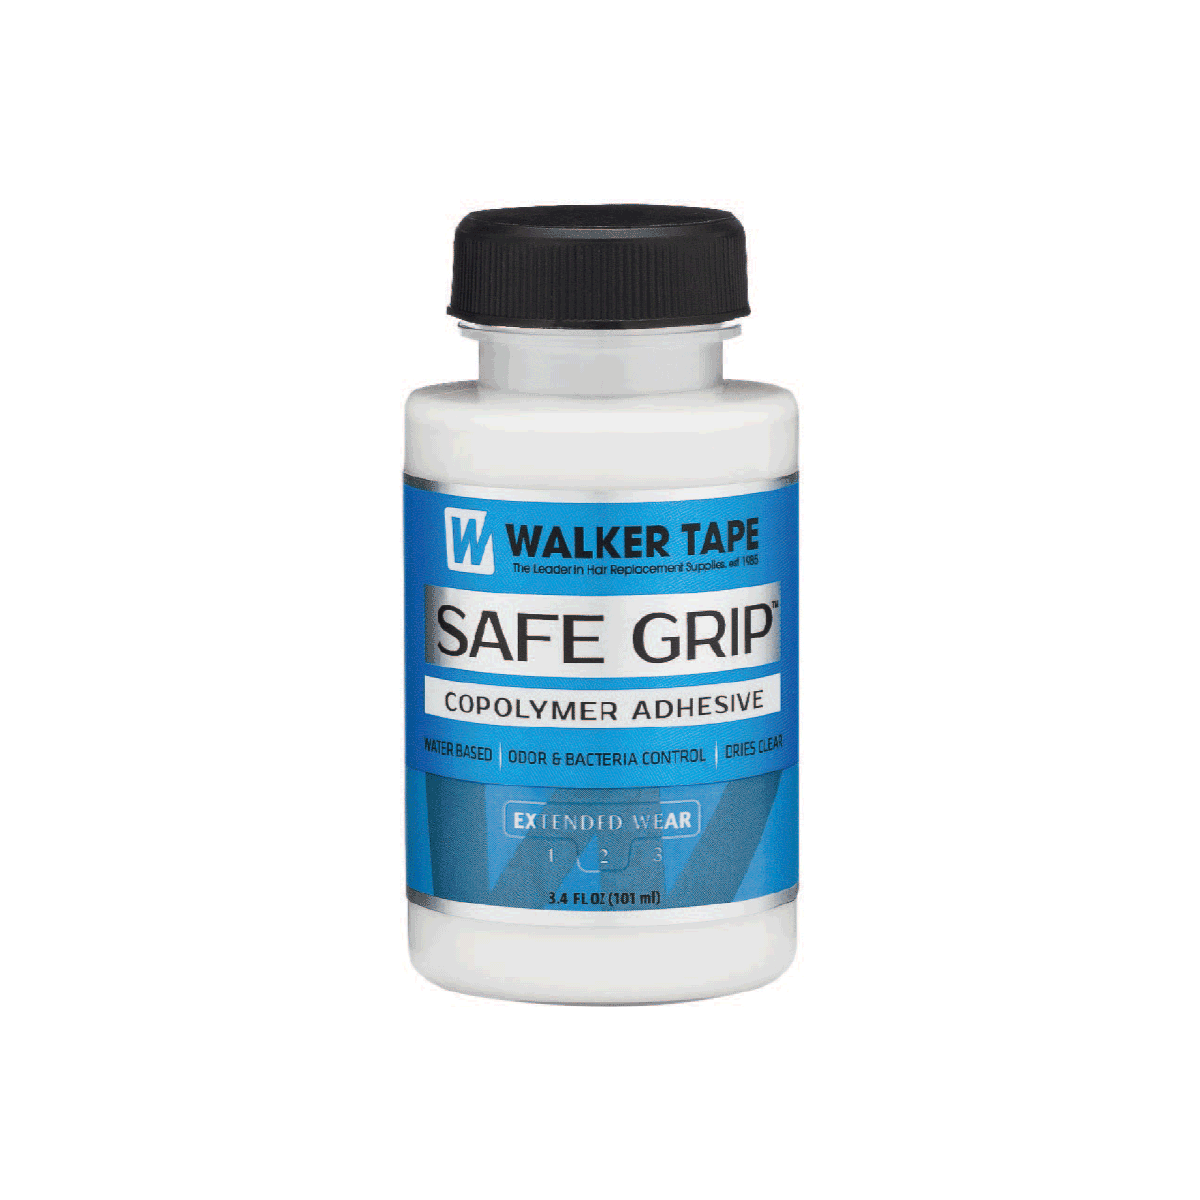 SAFE GRIP - 3.4 FL OZ, BRUSH-ON